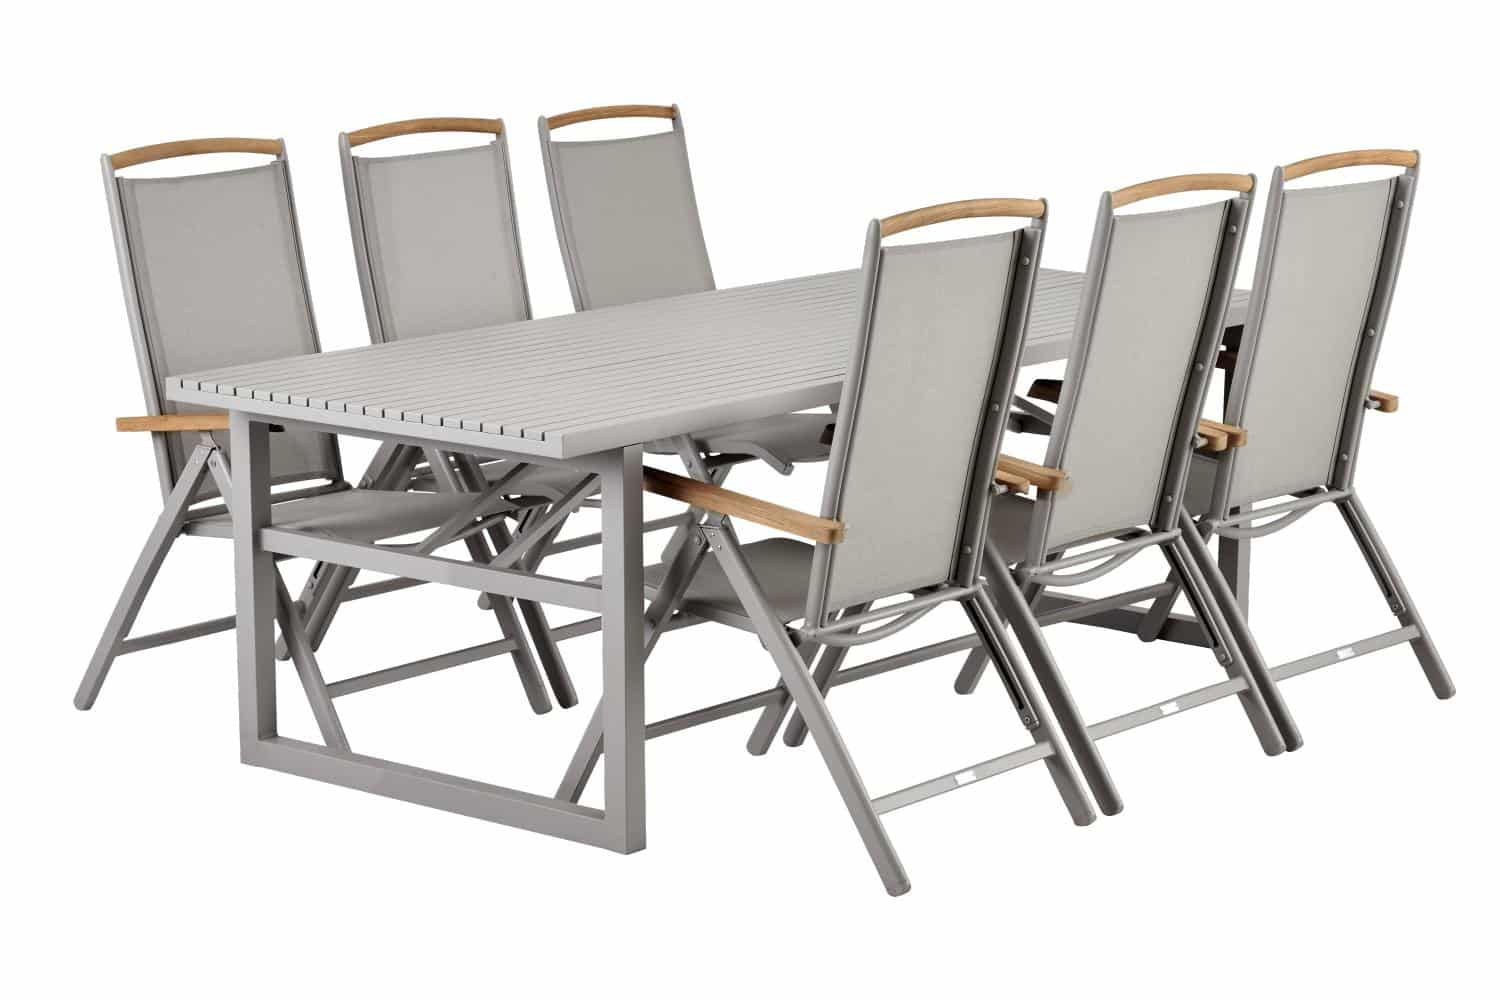 Brafab Vevi Matbord khaki är ett matbord 230×95 cm tillverkat i beige/khakifärgad underhållsfri aluminium. Med 6 st Andy beige positionsstolar.